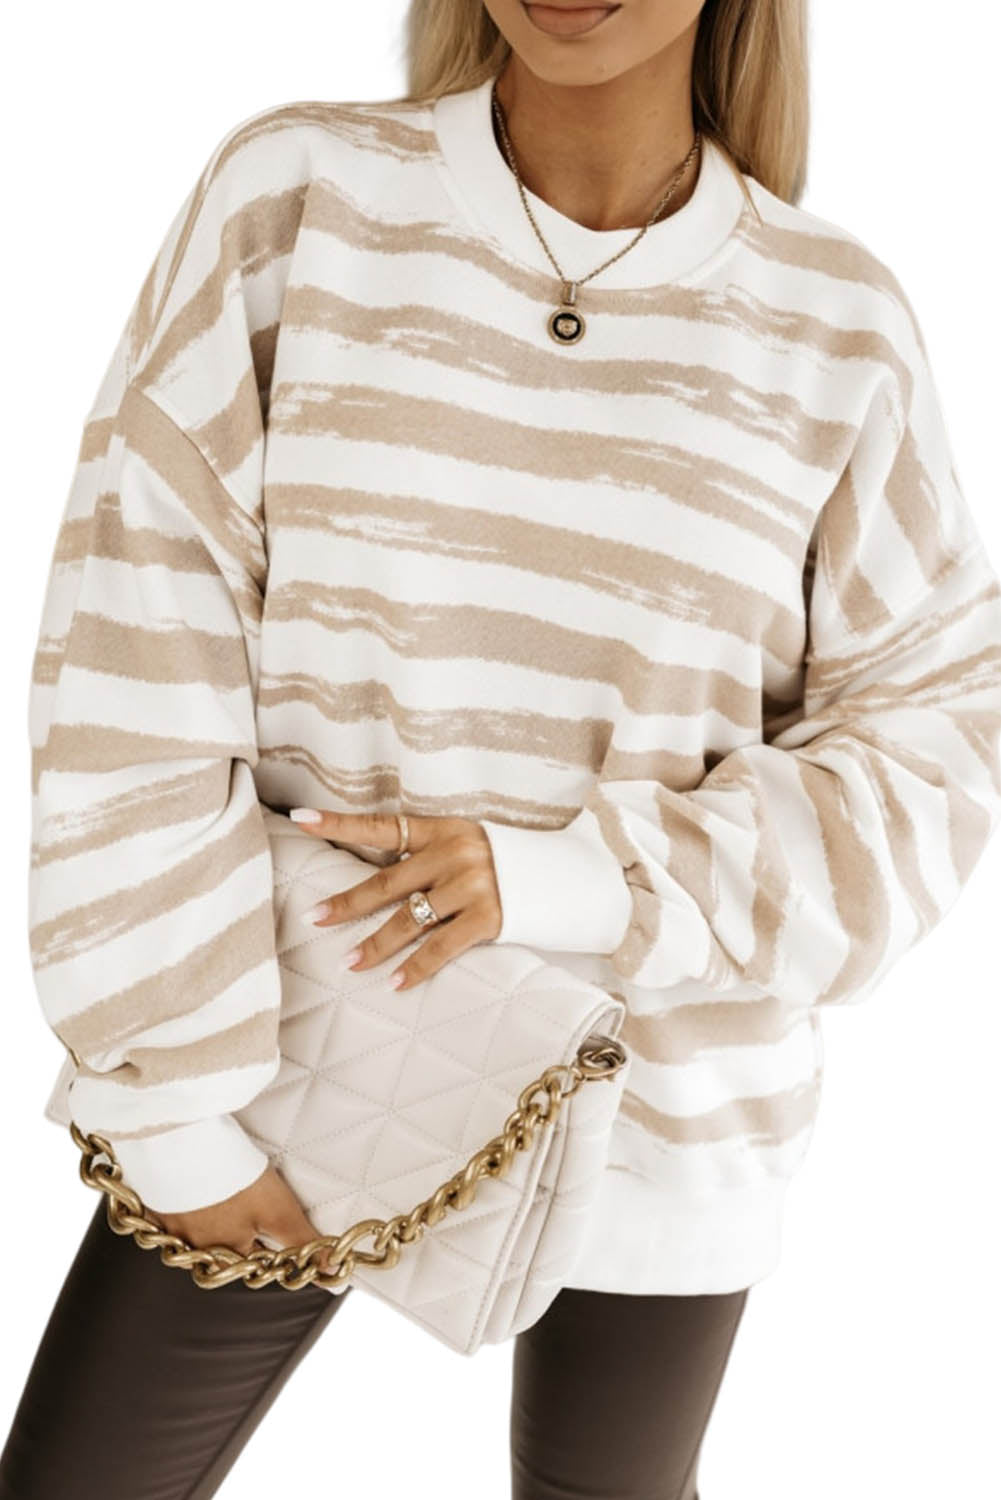 Hellrosa, übergroßes, gestreiftes Pullover-Sweatshirt mit Bischofsärmeln